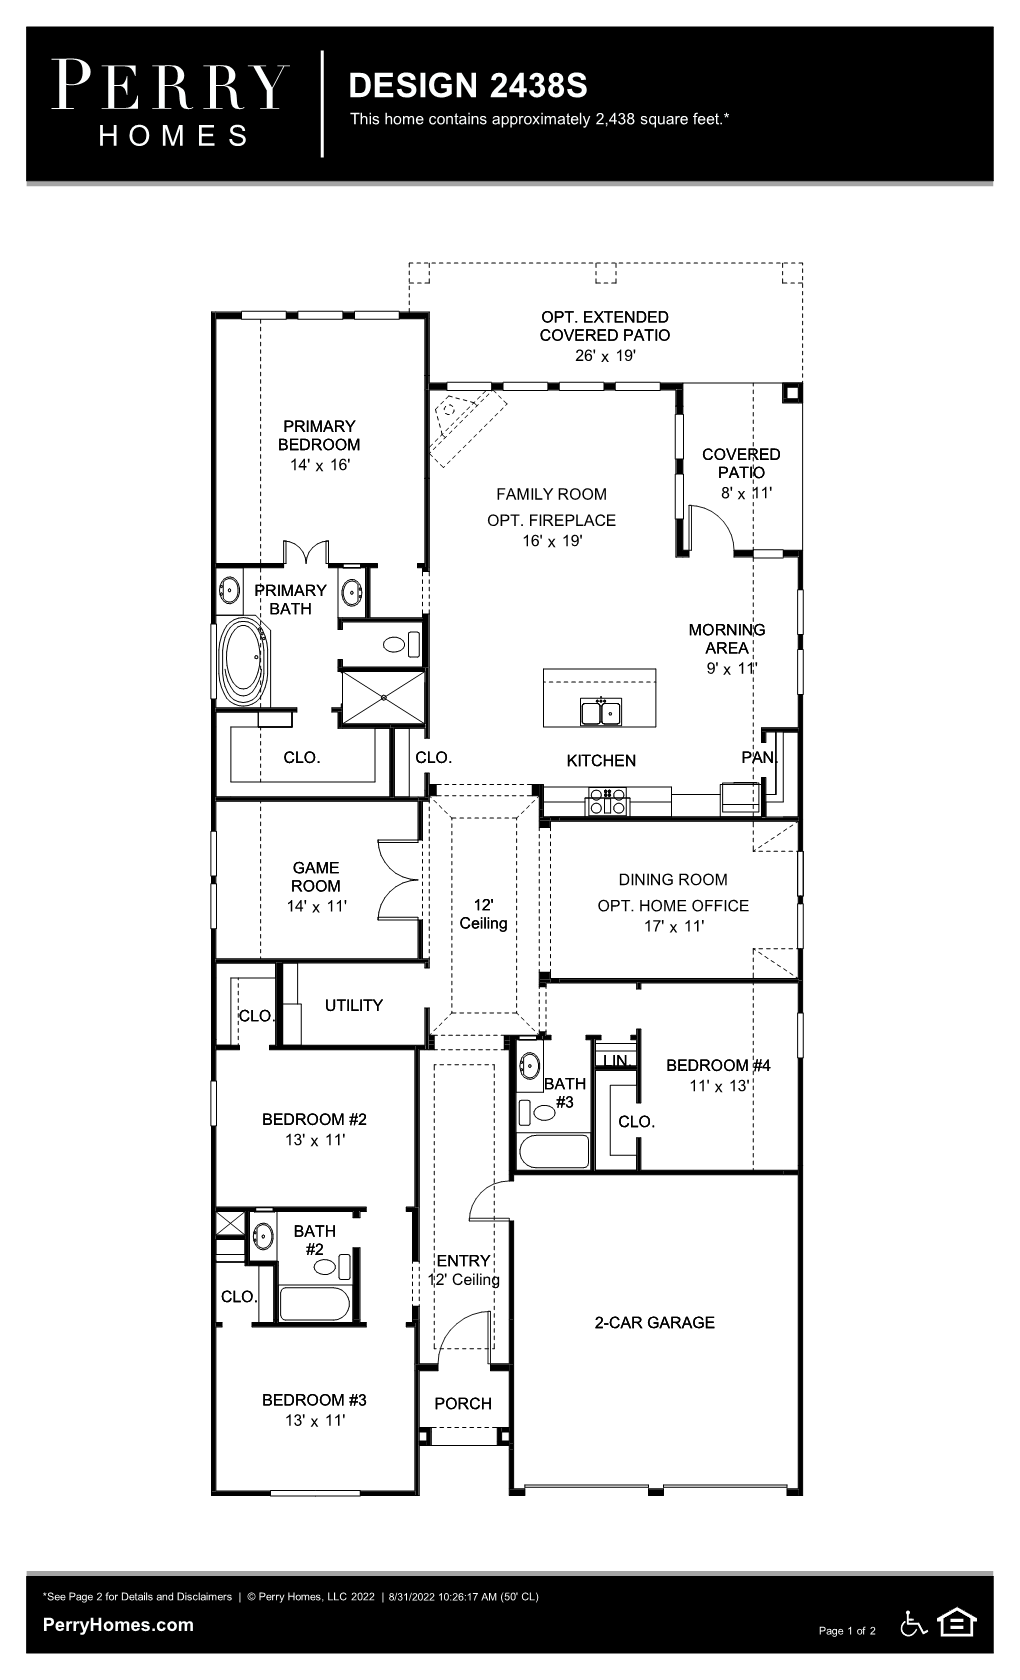 Floor Plan for 2438S